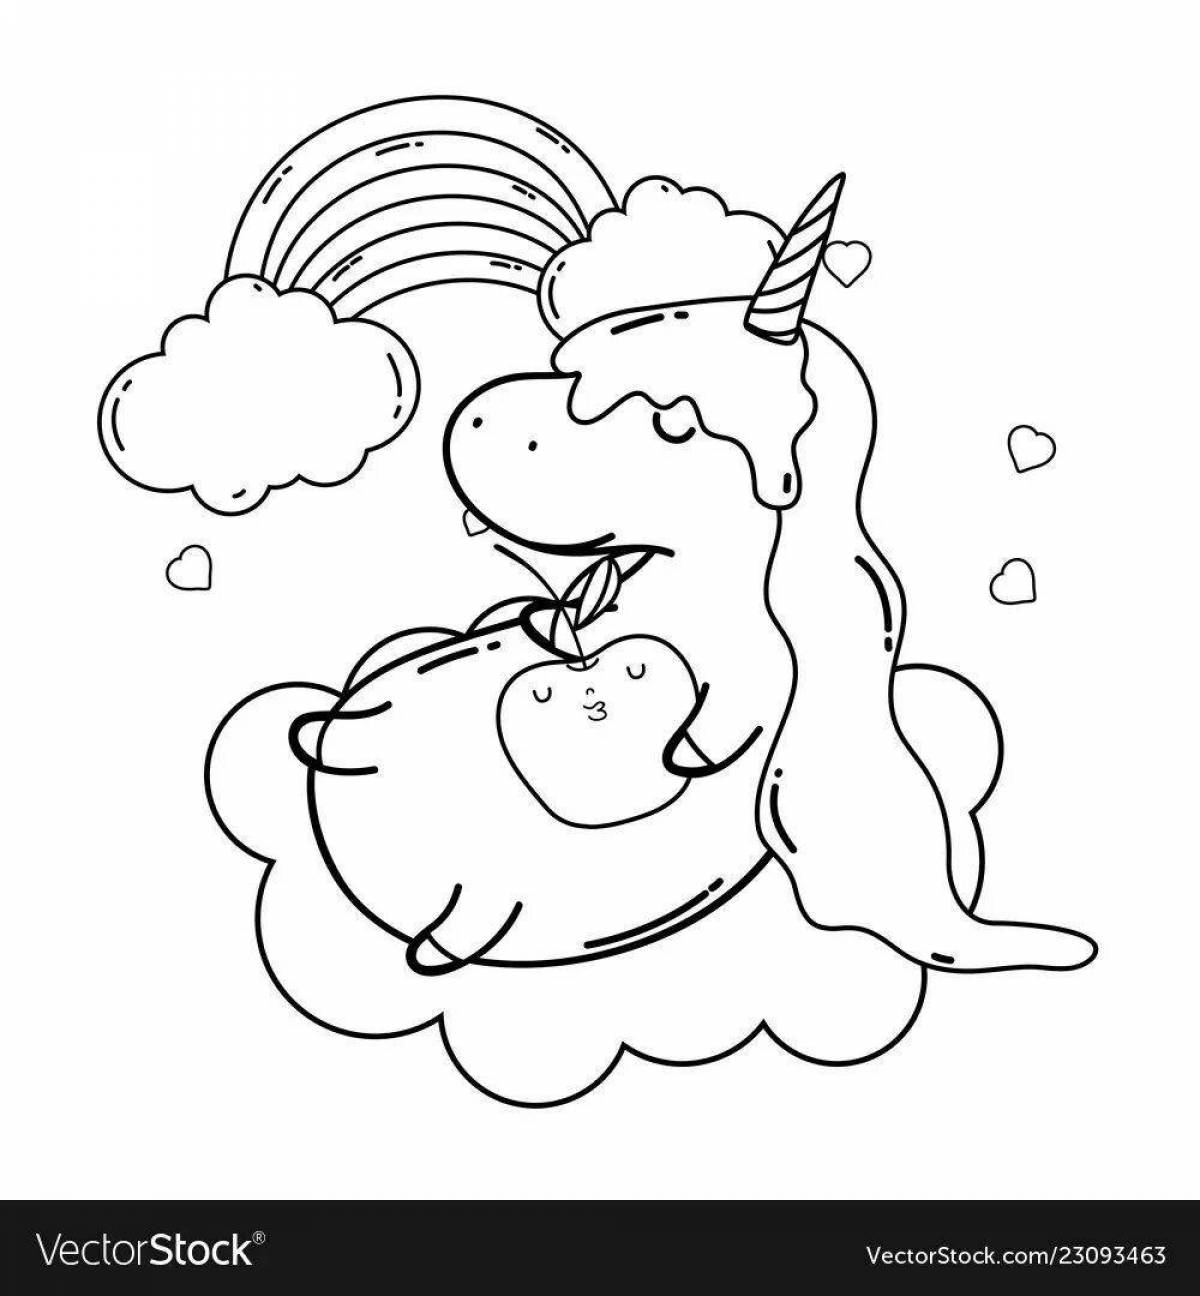 Увлекательная раскраска unicorn cloud